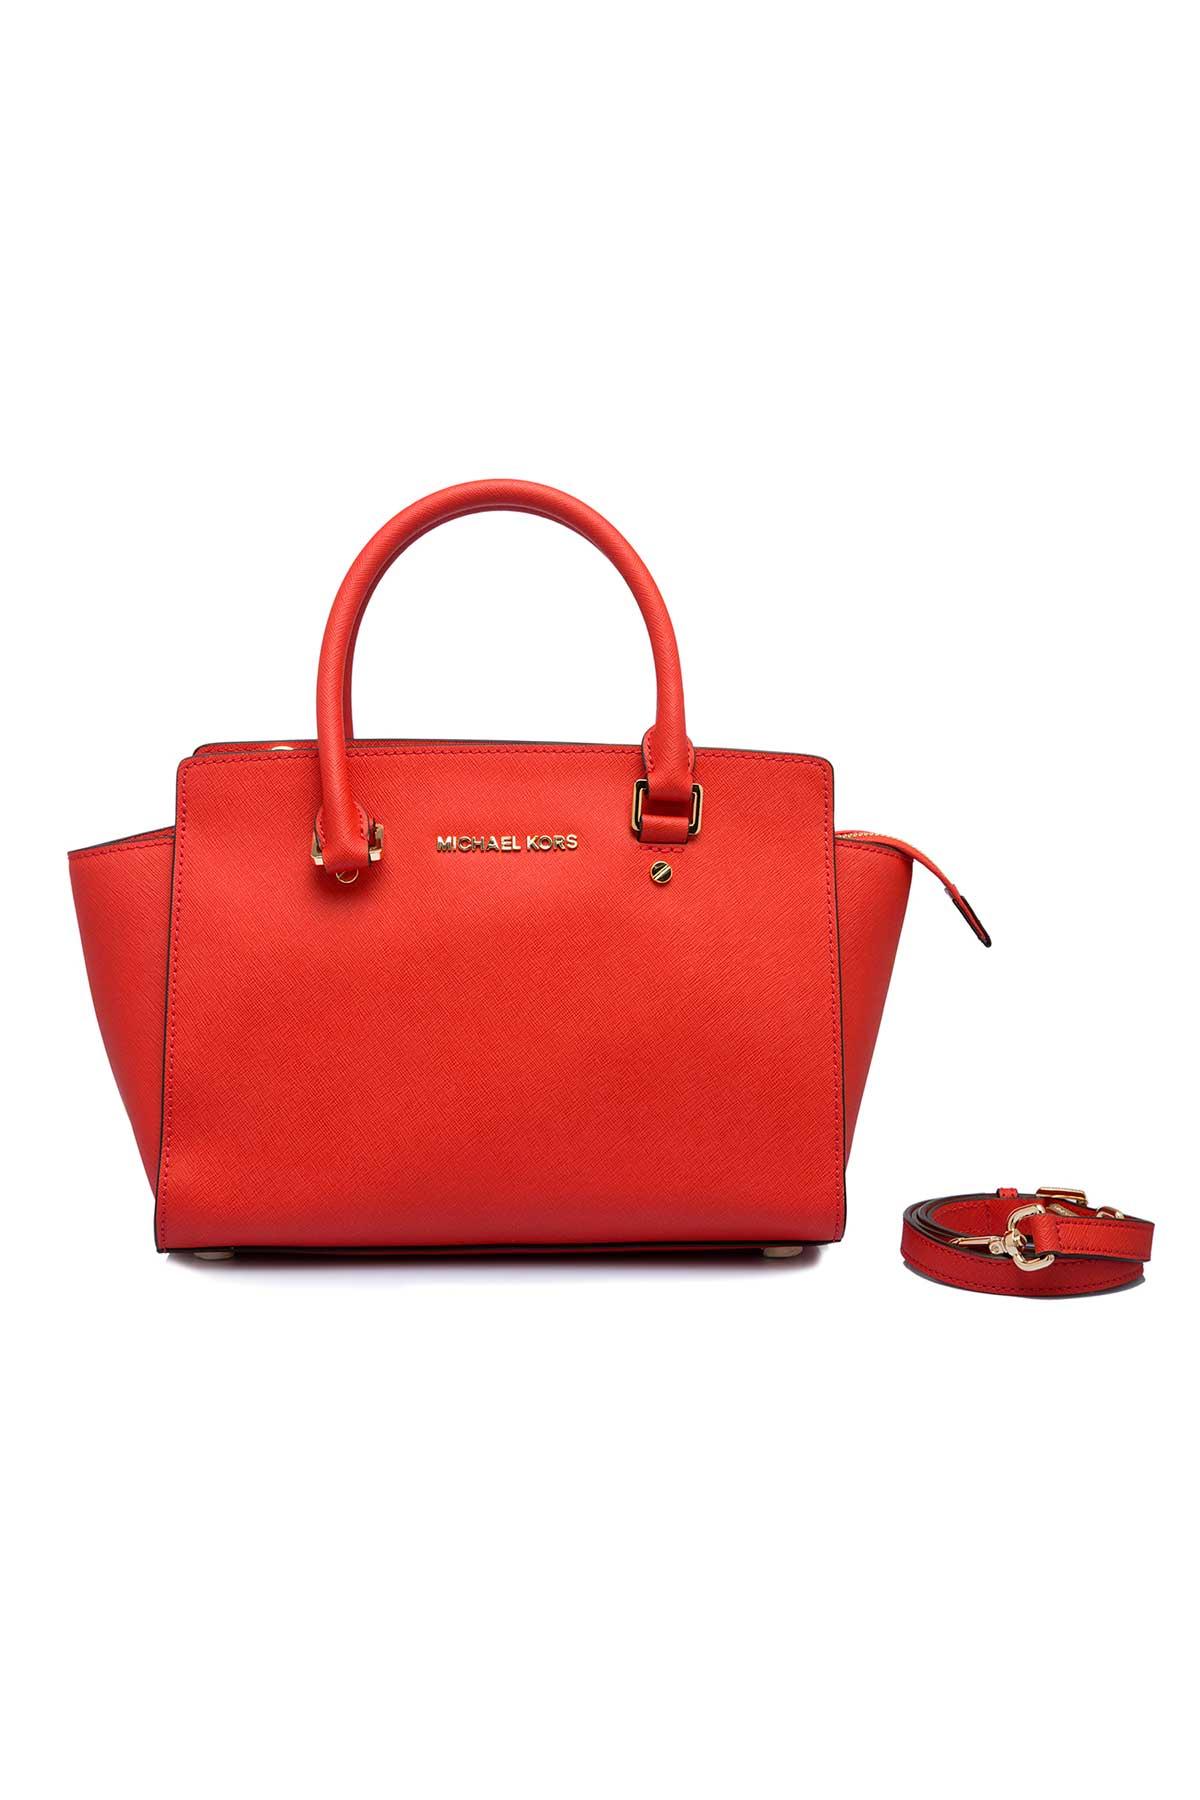 Michael Kors Hamilton Small Leather Satchel Key Lock Crossbody Bag (Merlot)  | Leather satchel, Crossbody bag, Satchel